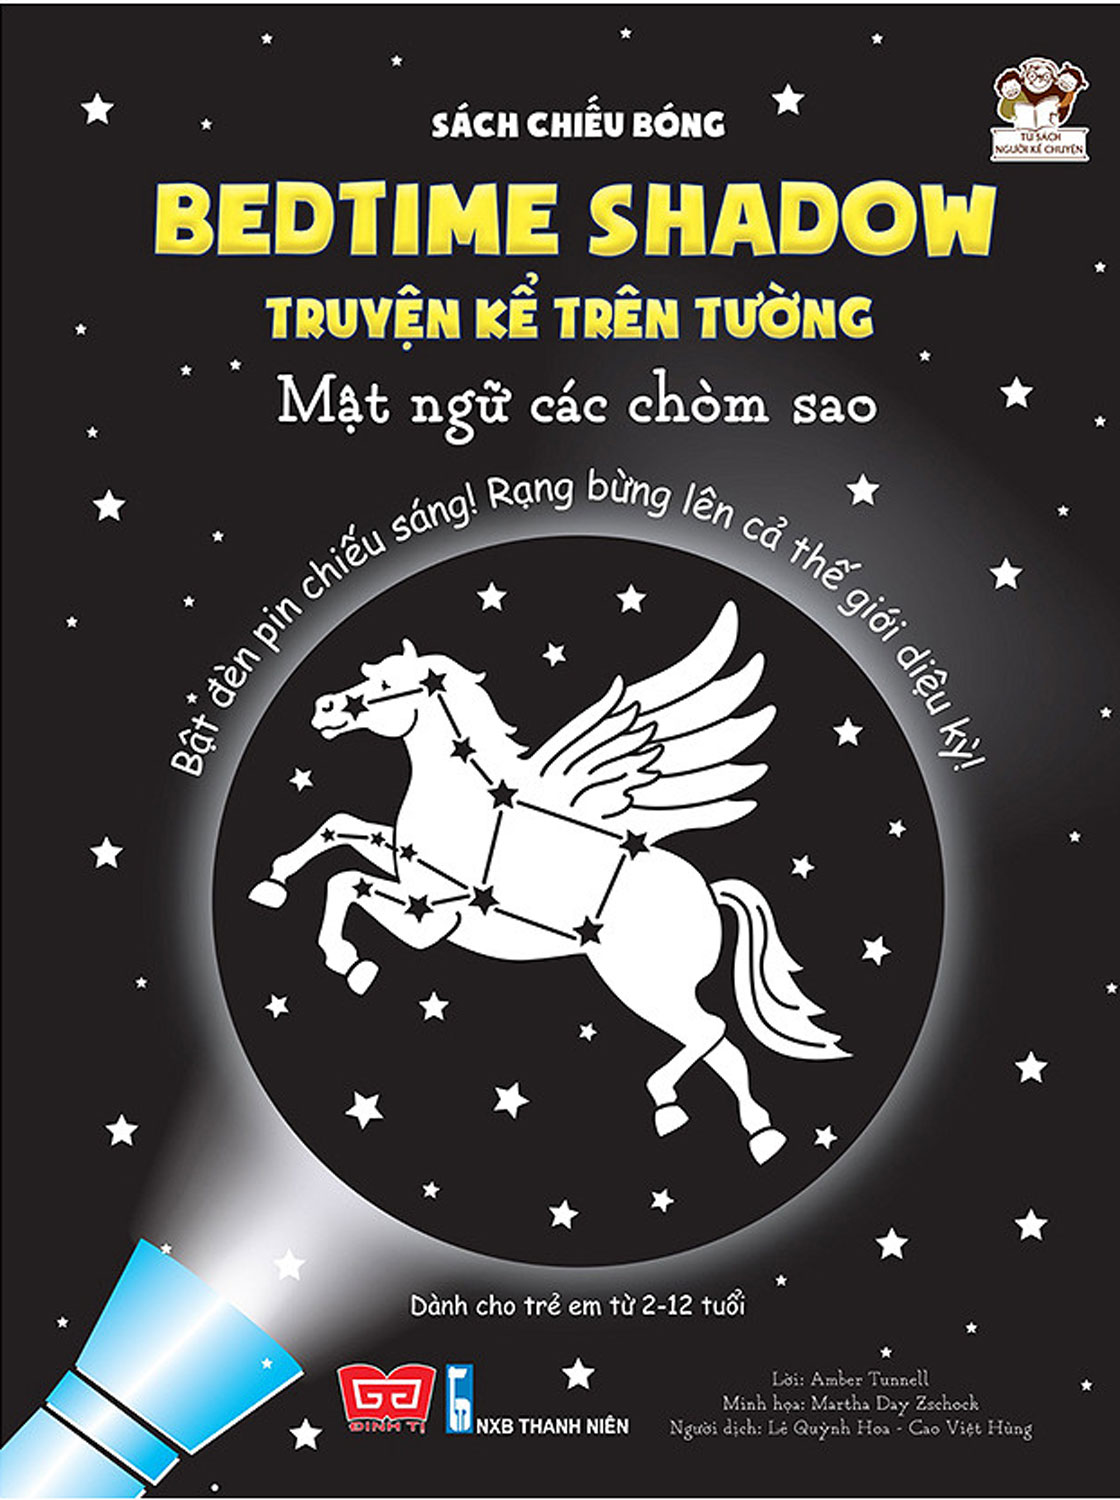 Sách Chiếu Bóng - Bedtime Shadow - Truyện Kể Trên Tường - Mật Ngữ Các Chòm Sao